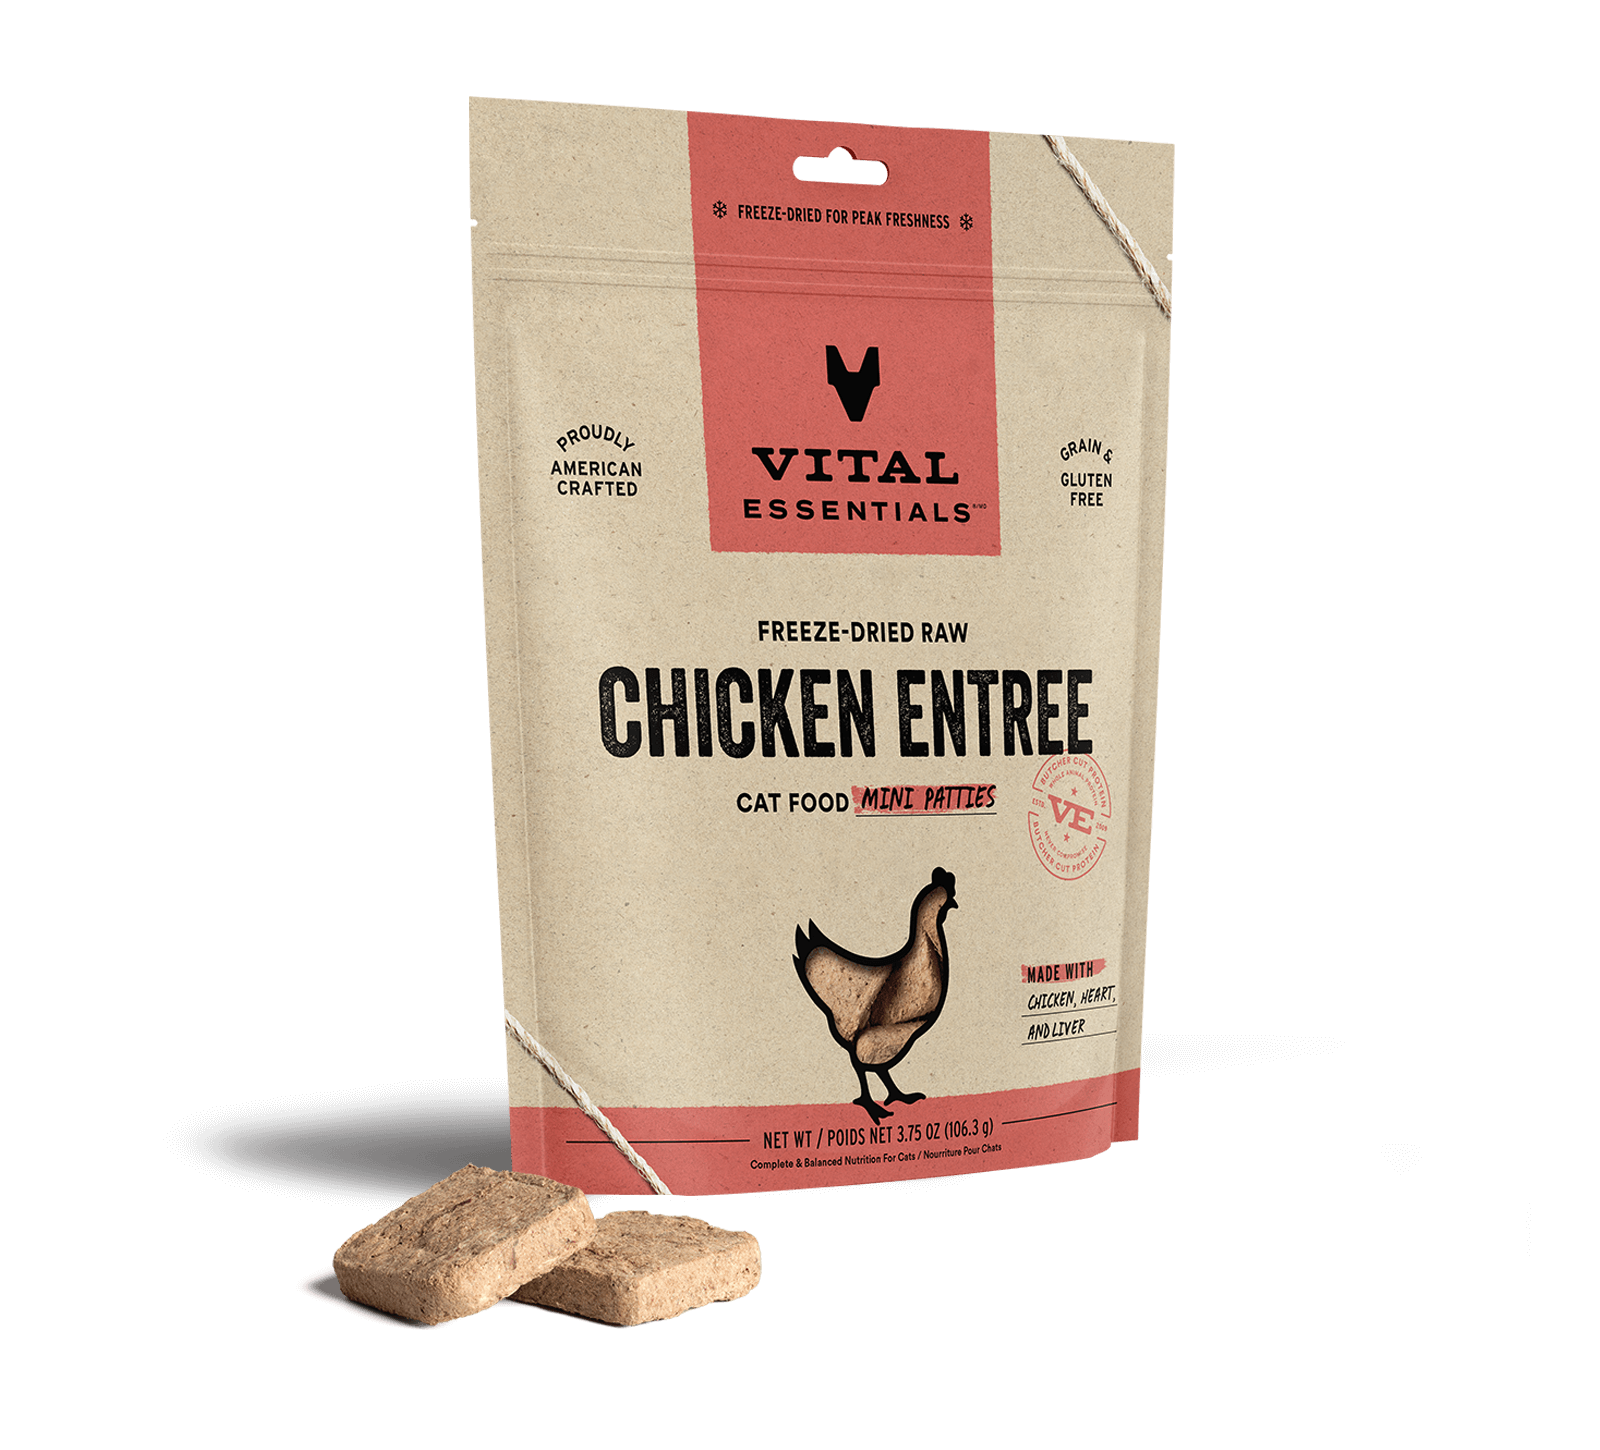 Vital Essentials Freeze-Dried Raw Chicken Entree Cat Food Mini Patties, 3.75 oz - Healing/First Aid